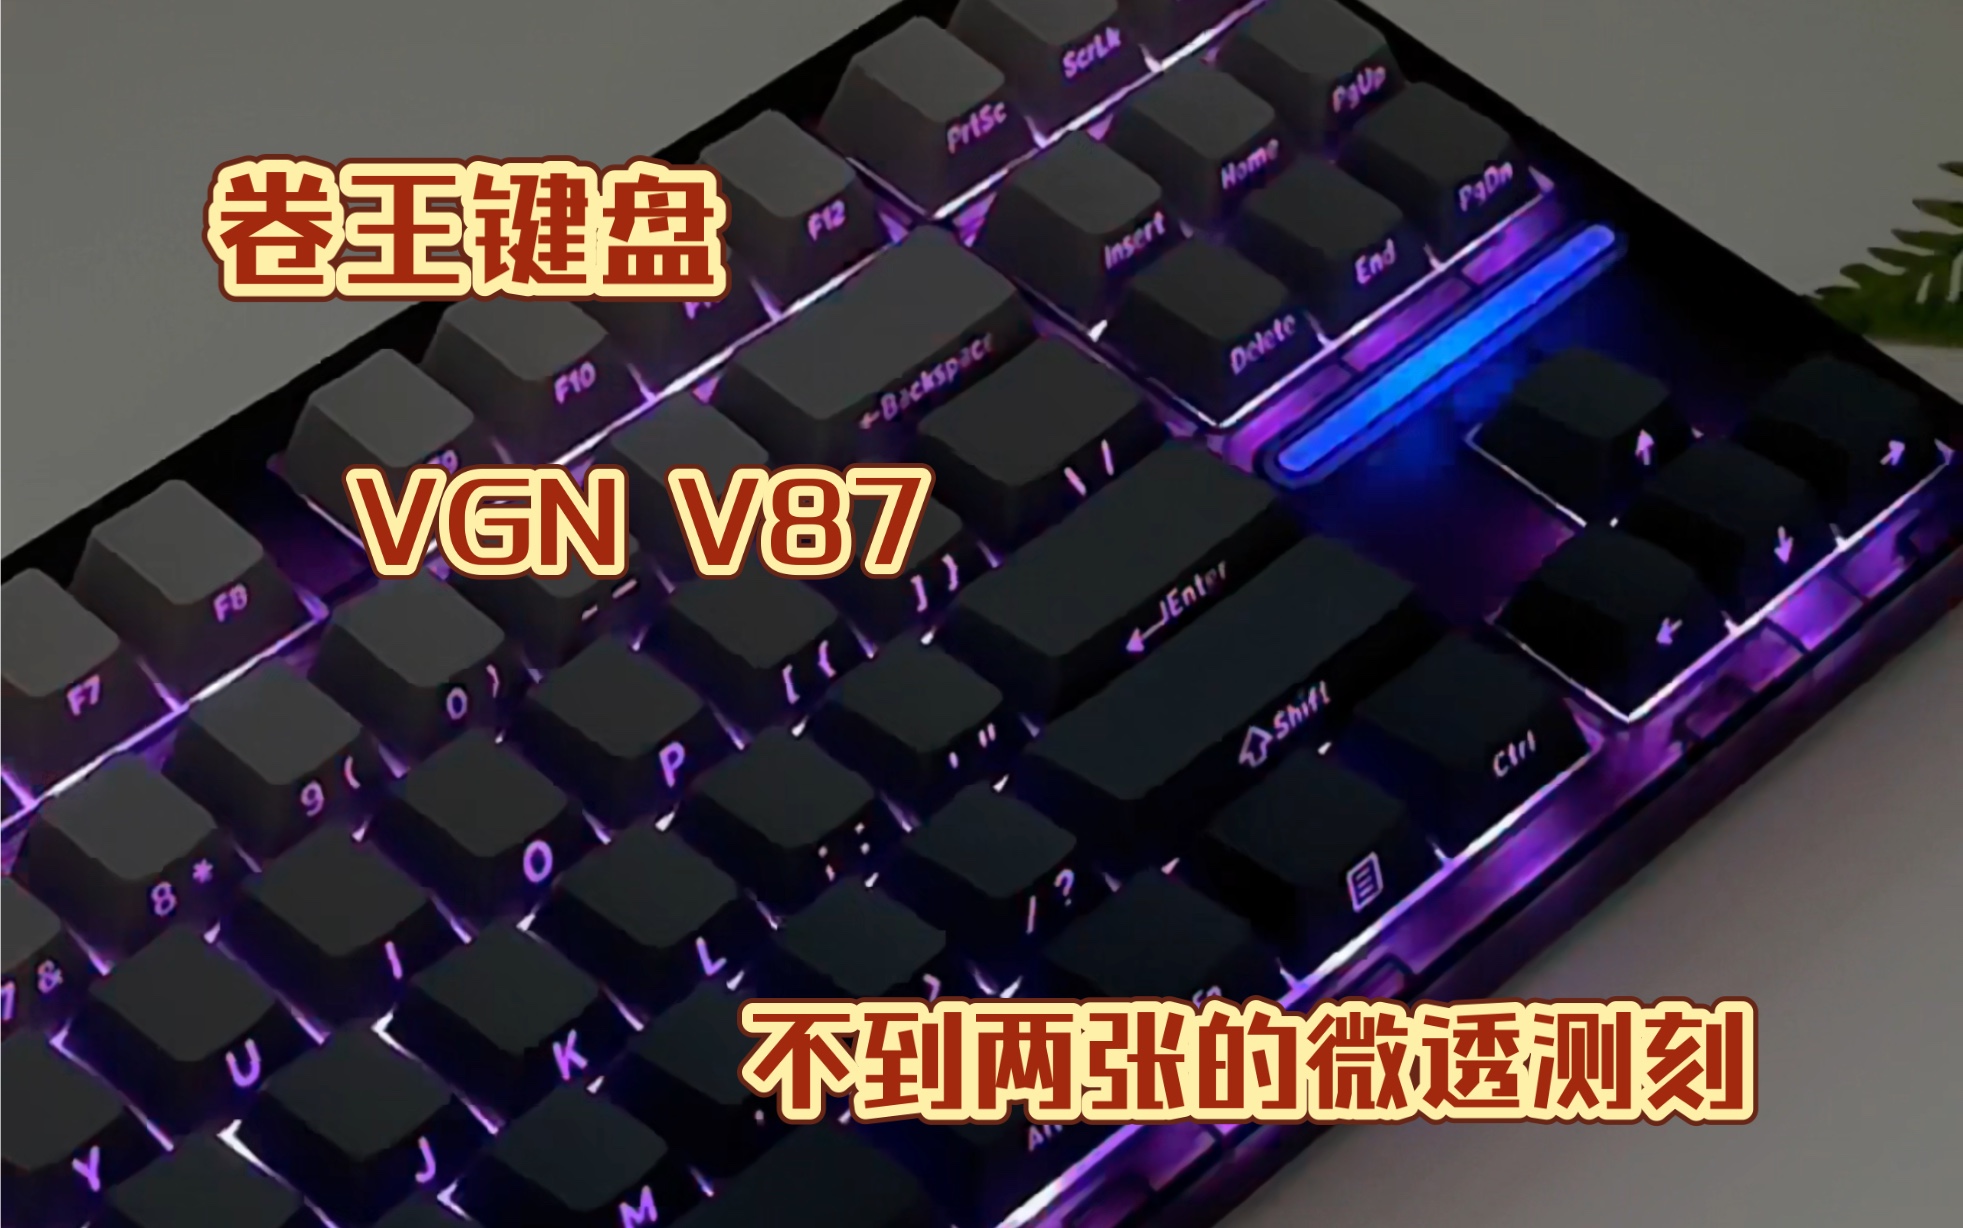 卷王键盘就不得不提VGN了，不到两张拿下的微透测刻键盘，这把键盘的灯效存在感真的很强，微透磨砂感的键盘，开灯效果下，更为貌美